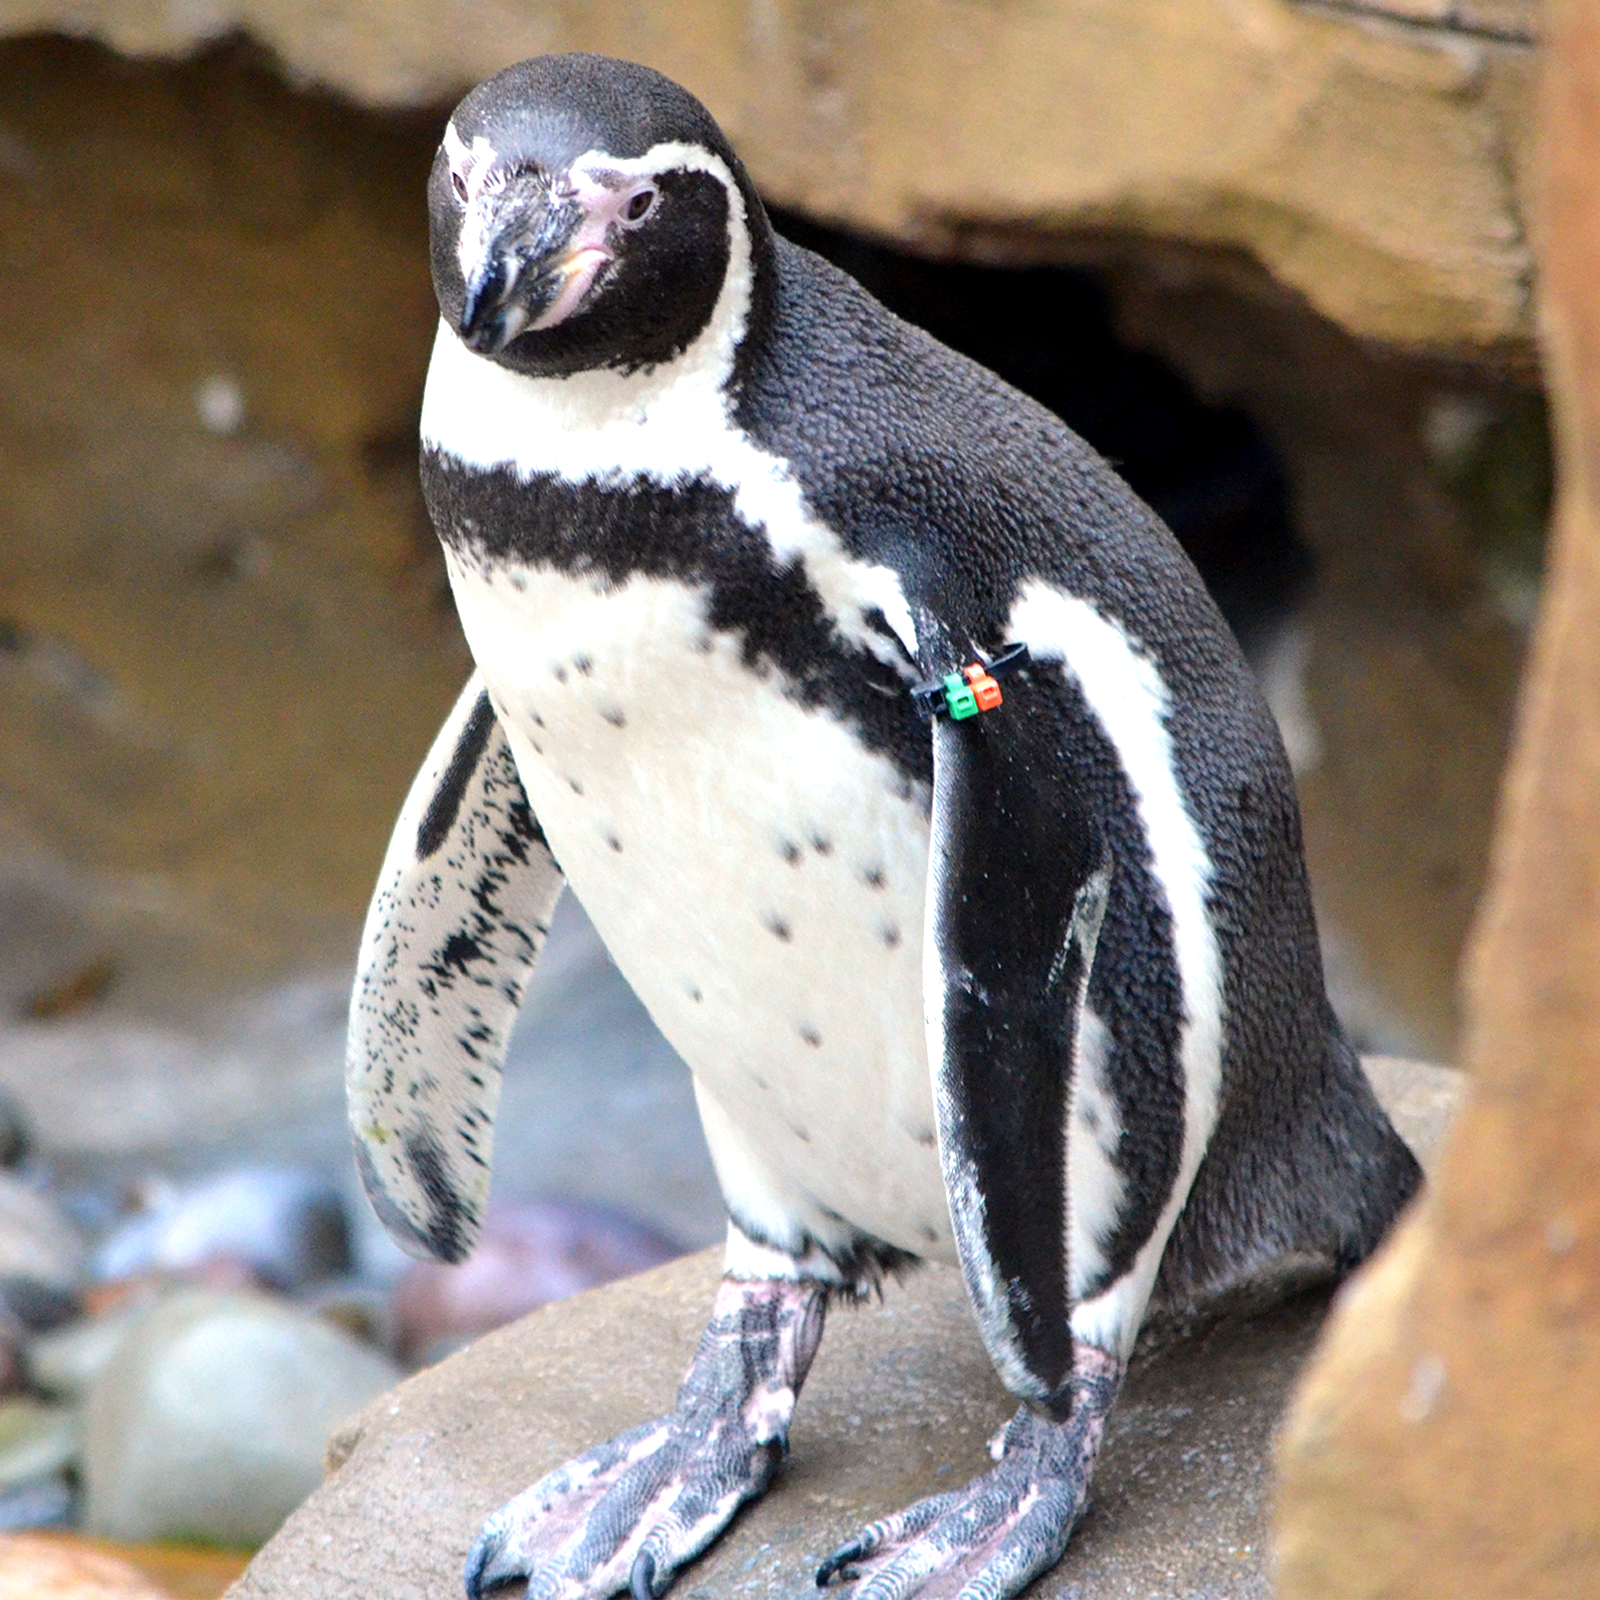 Humboldt penguin: Get flipping excited! Humboldt penguins at